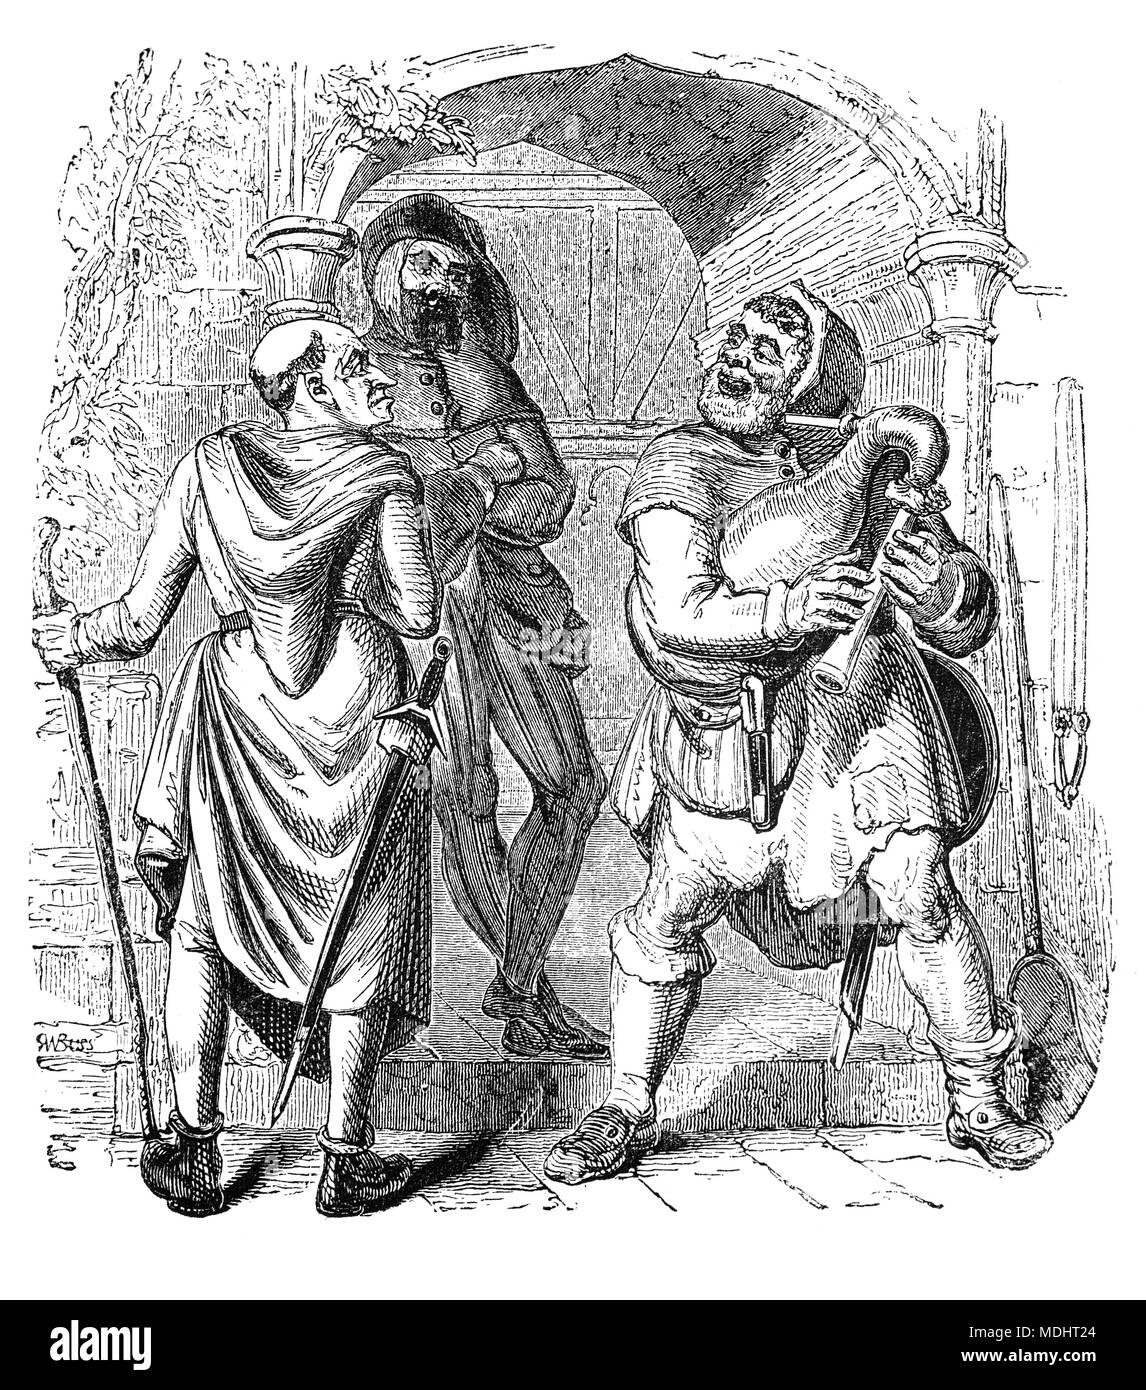 Deux des personnages de contes de Canterbury, une collection de 24 histoires écrites par Geoffrey Chaucer entre 1387 et 1400 quand il est devenu contrôleur des douanes et de la Justice de Paix. Les contes (surtout en vers, bien que certains soient en prose) sont présentés dans le cadre d'un concours de contes par un groupe de pèlerins qu'ils voyagent ensemble dans un voyage de Londres à Canterbury pour visiter le sanctuaire de Saint Thomas Becket dans la Cathédrale de Canterbury. L'illustration montre le Meunier, Manciple et Reve. Banque D'Images